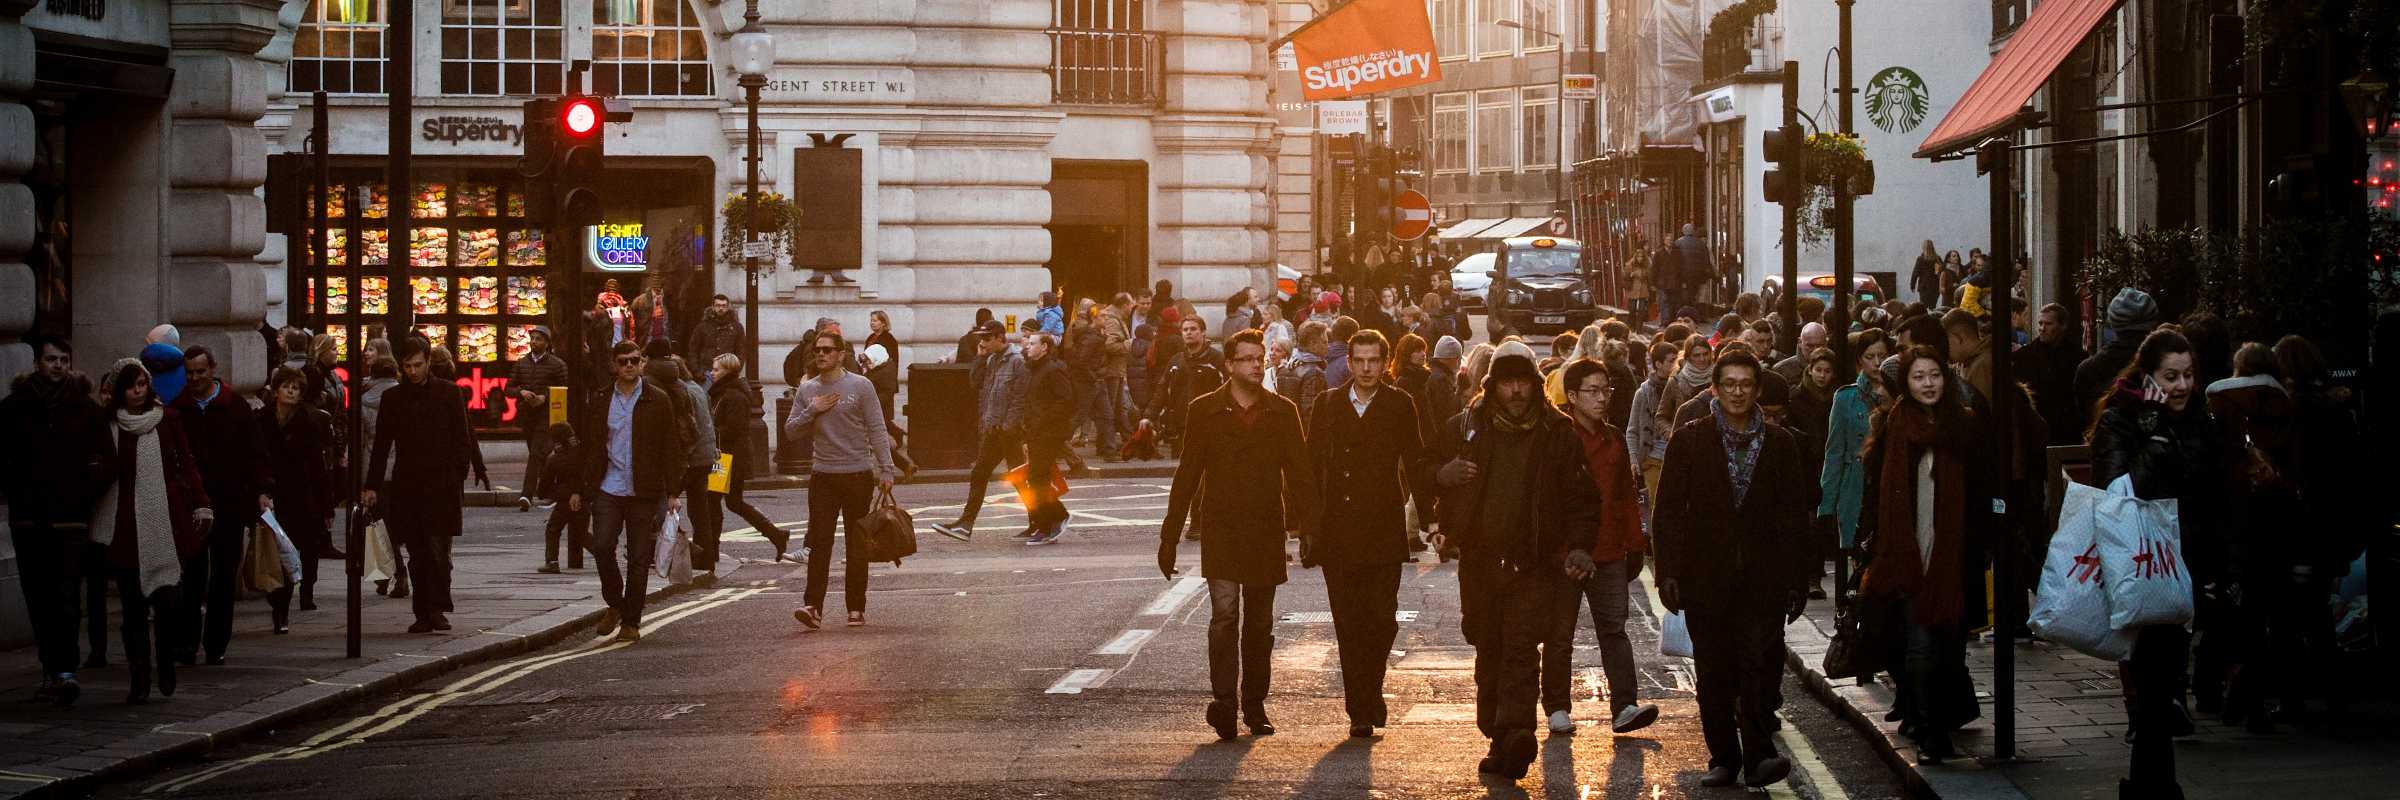 Leute, die durch London laufen, plaudern und einkaufen